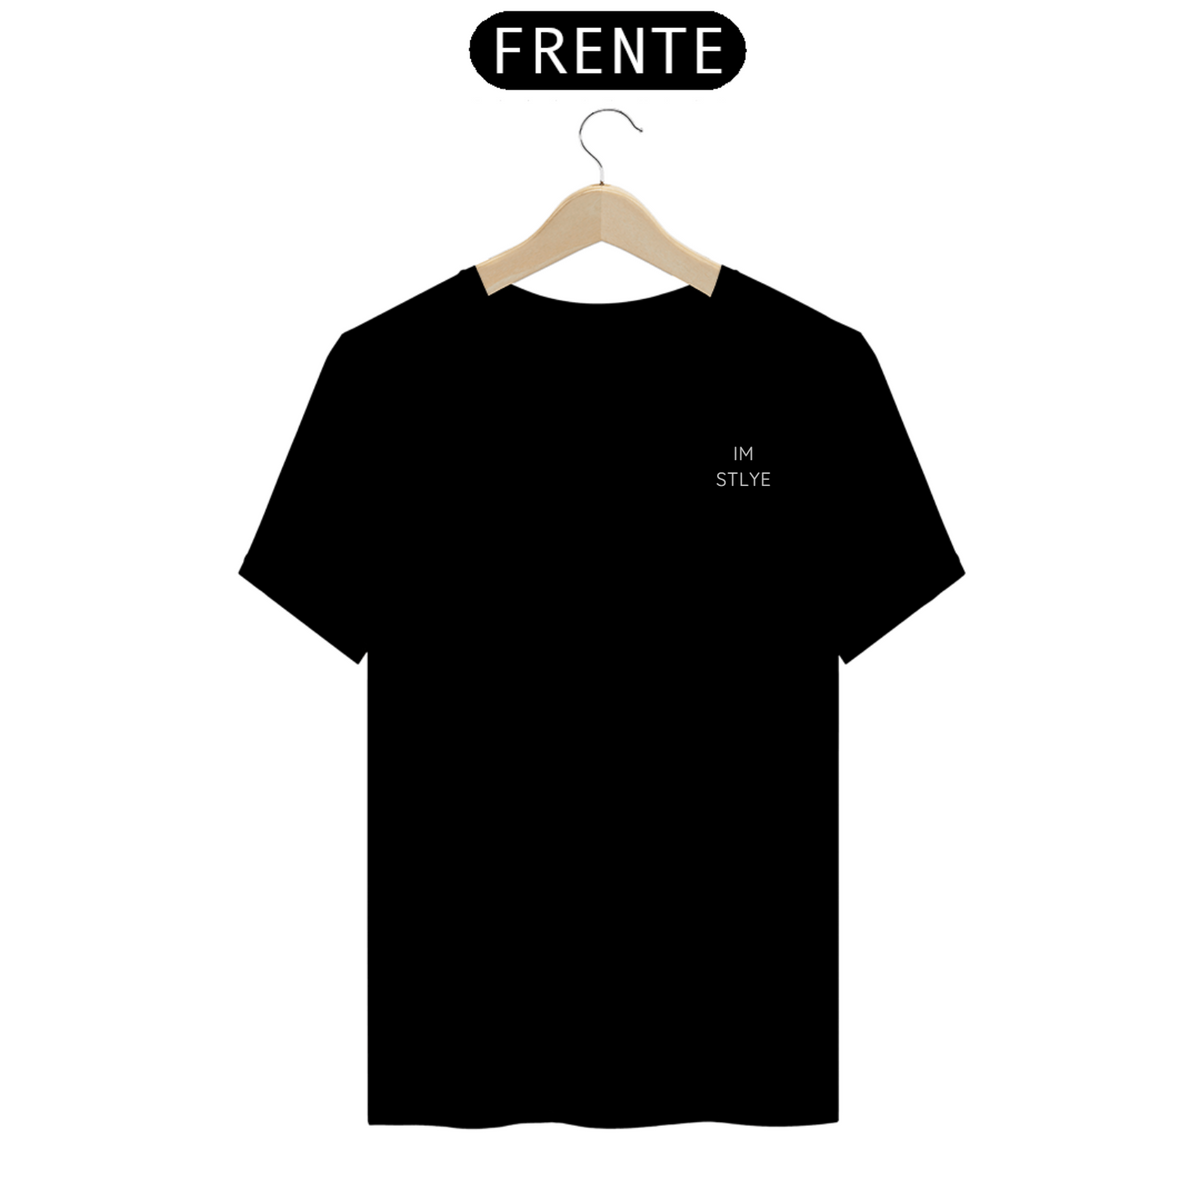 Nome do produto: Camisa lisa preta